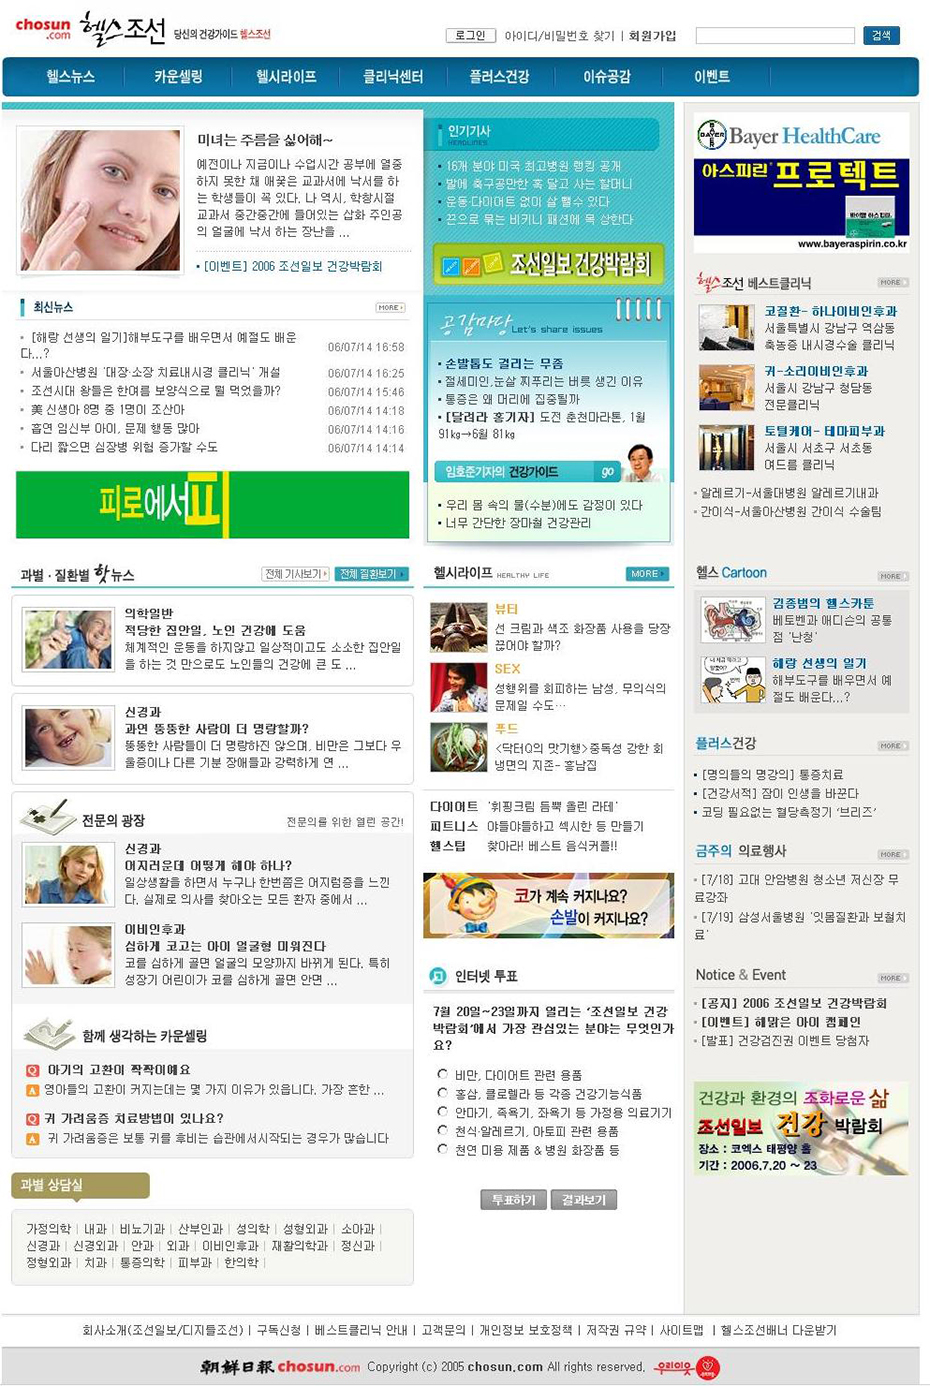 2005년 헬스조선닷컴